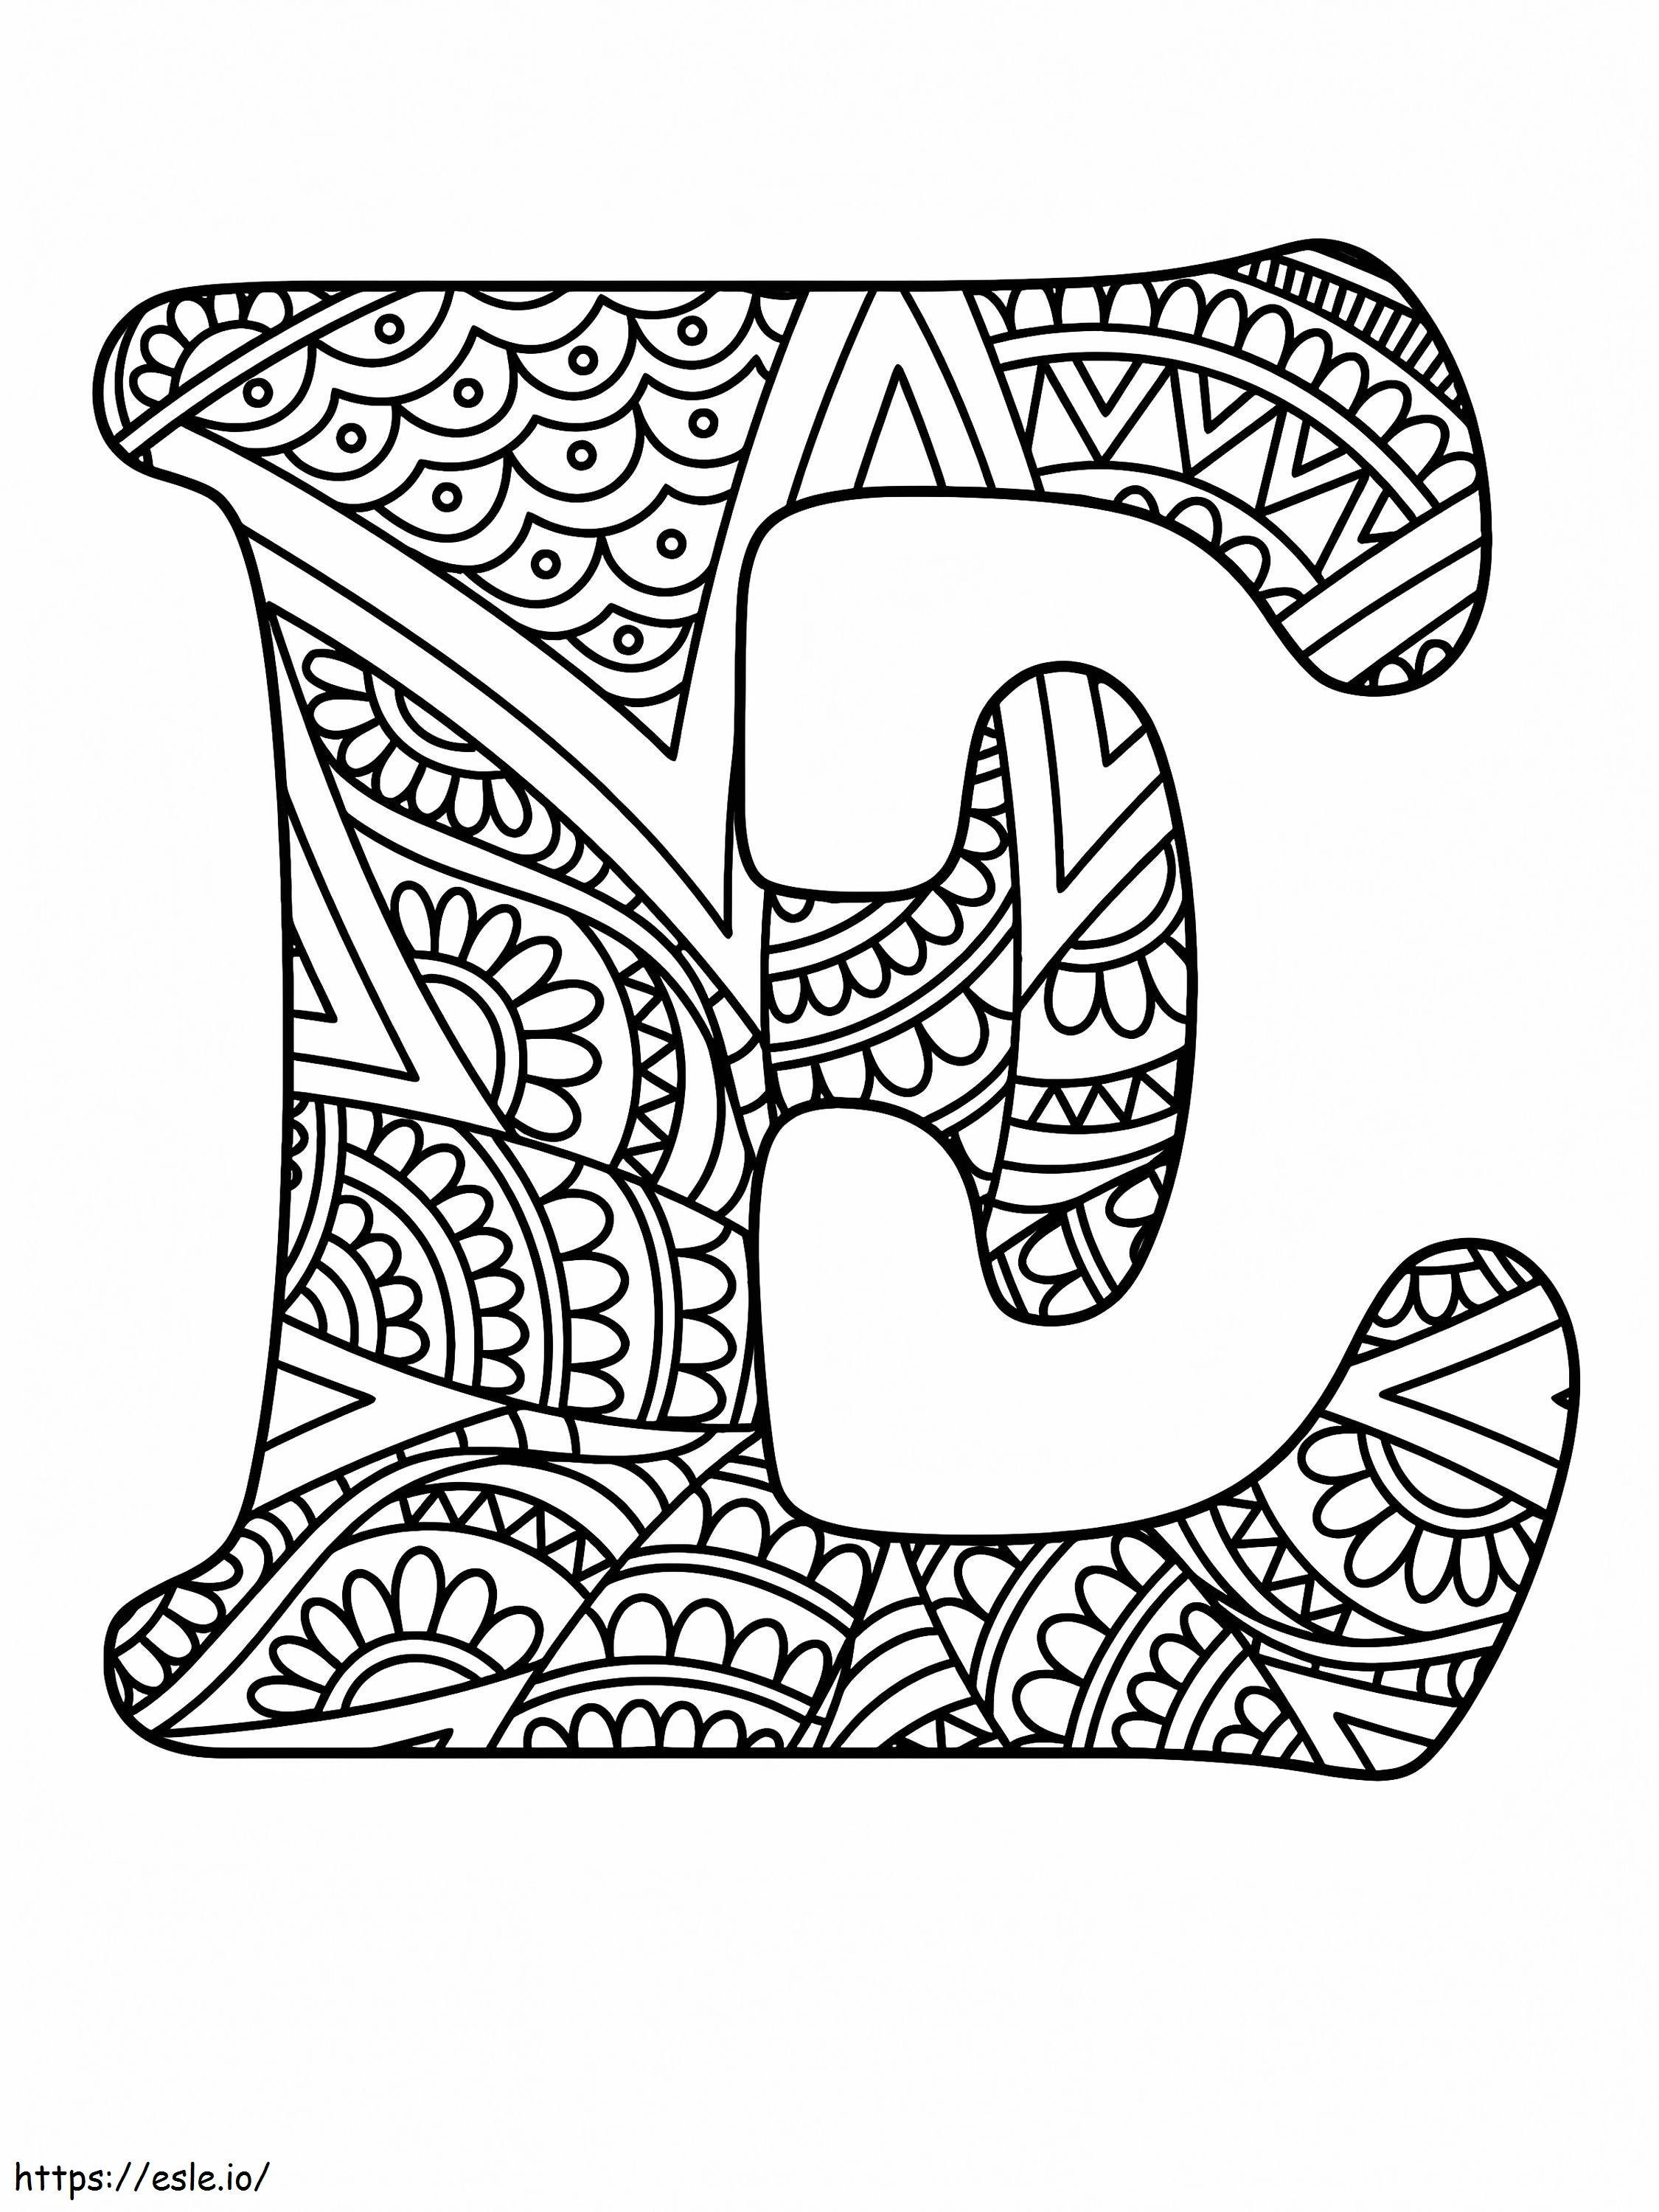 Letra E Alfabeto Mandala para colorear